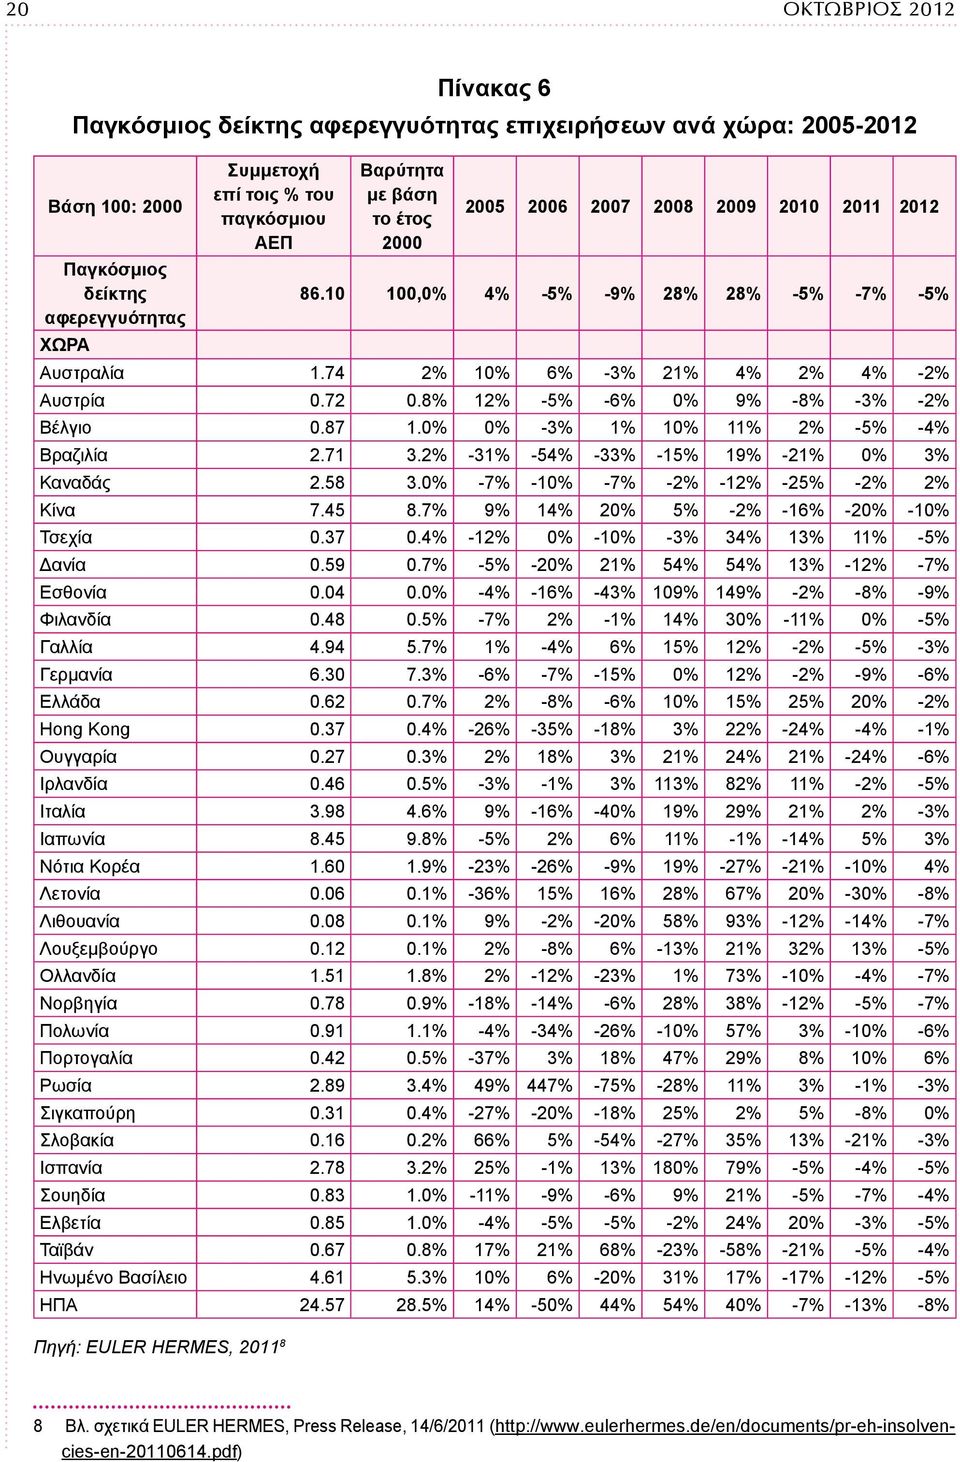 8% 12% -5% -6% 0% 9% -8% -3% -2% Βέλγιο 0.87 1.0% 0% -3% 1% 10% 11% 2% -5% -4% Βραζιλία 2.71 3.2% -31% -54% -33% -15% 19% -21% 0% 3% Καναδάς 2.58 3.0% -7% -10% -7% -2% -12% -25% -2% 2% Κίνα 7.45 8.